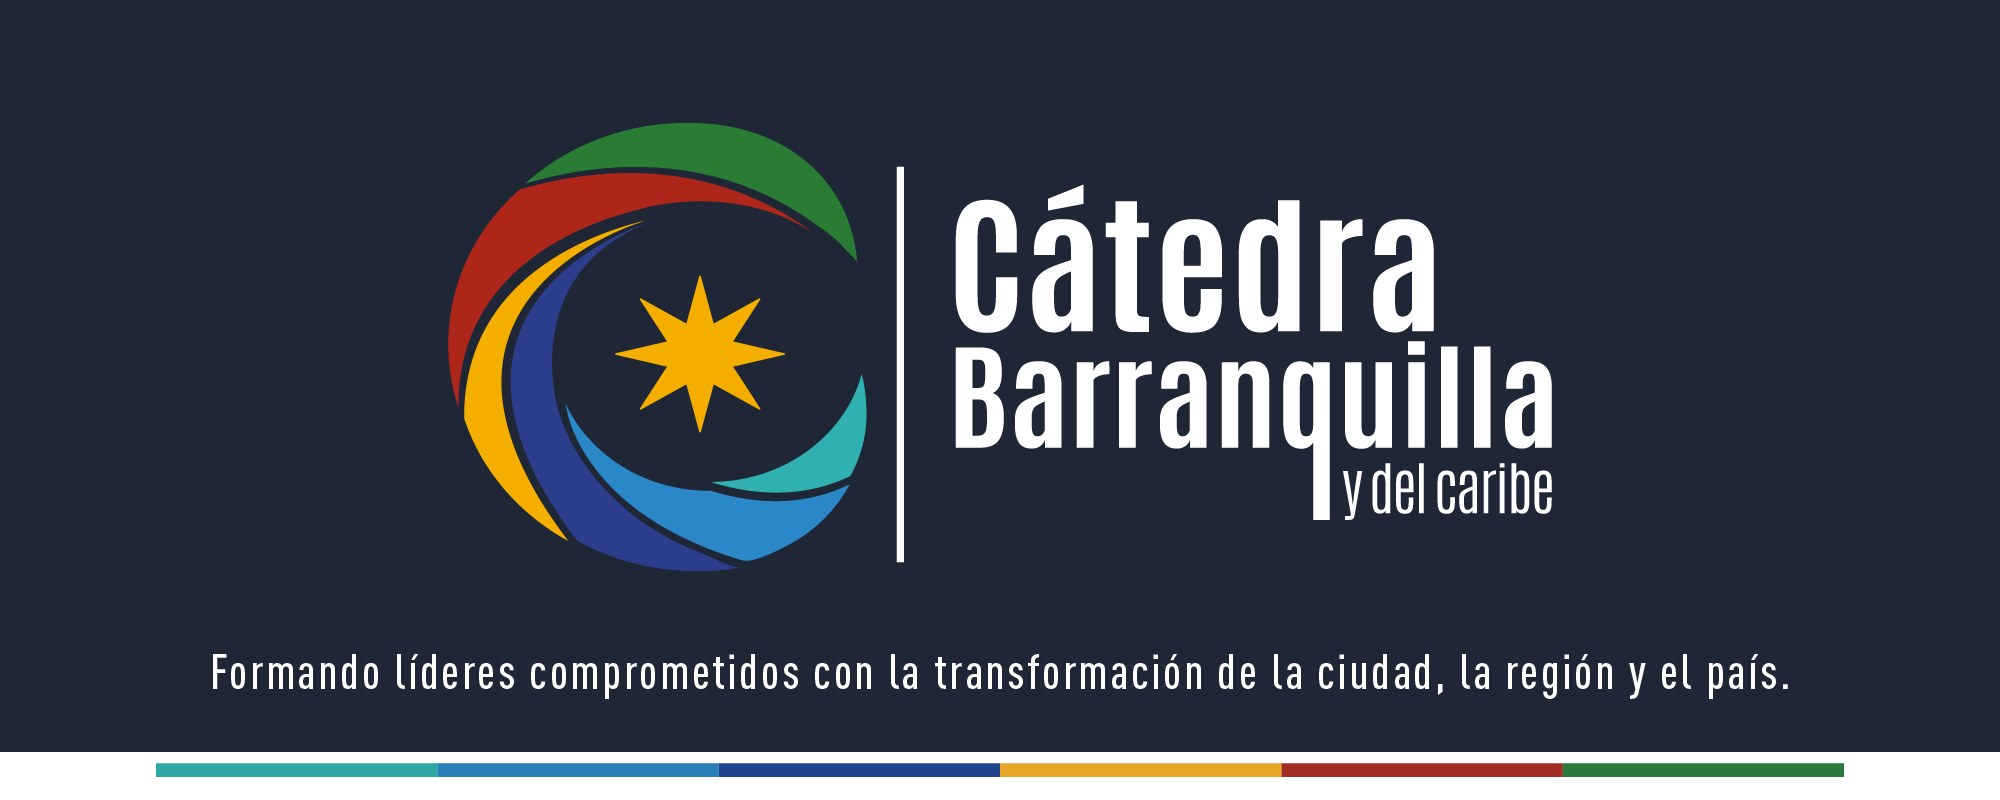 Banner Catedra Barranquilla